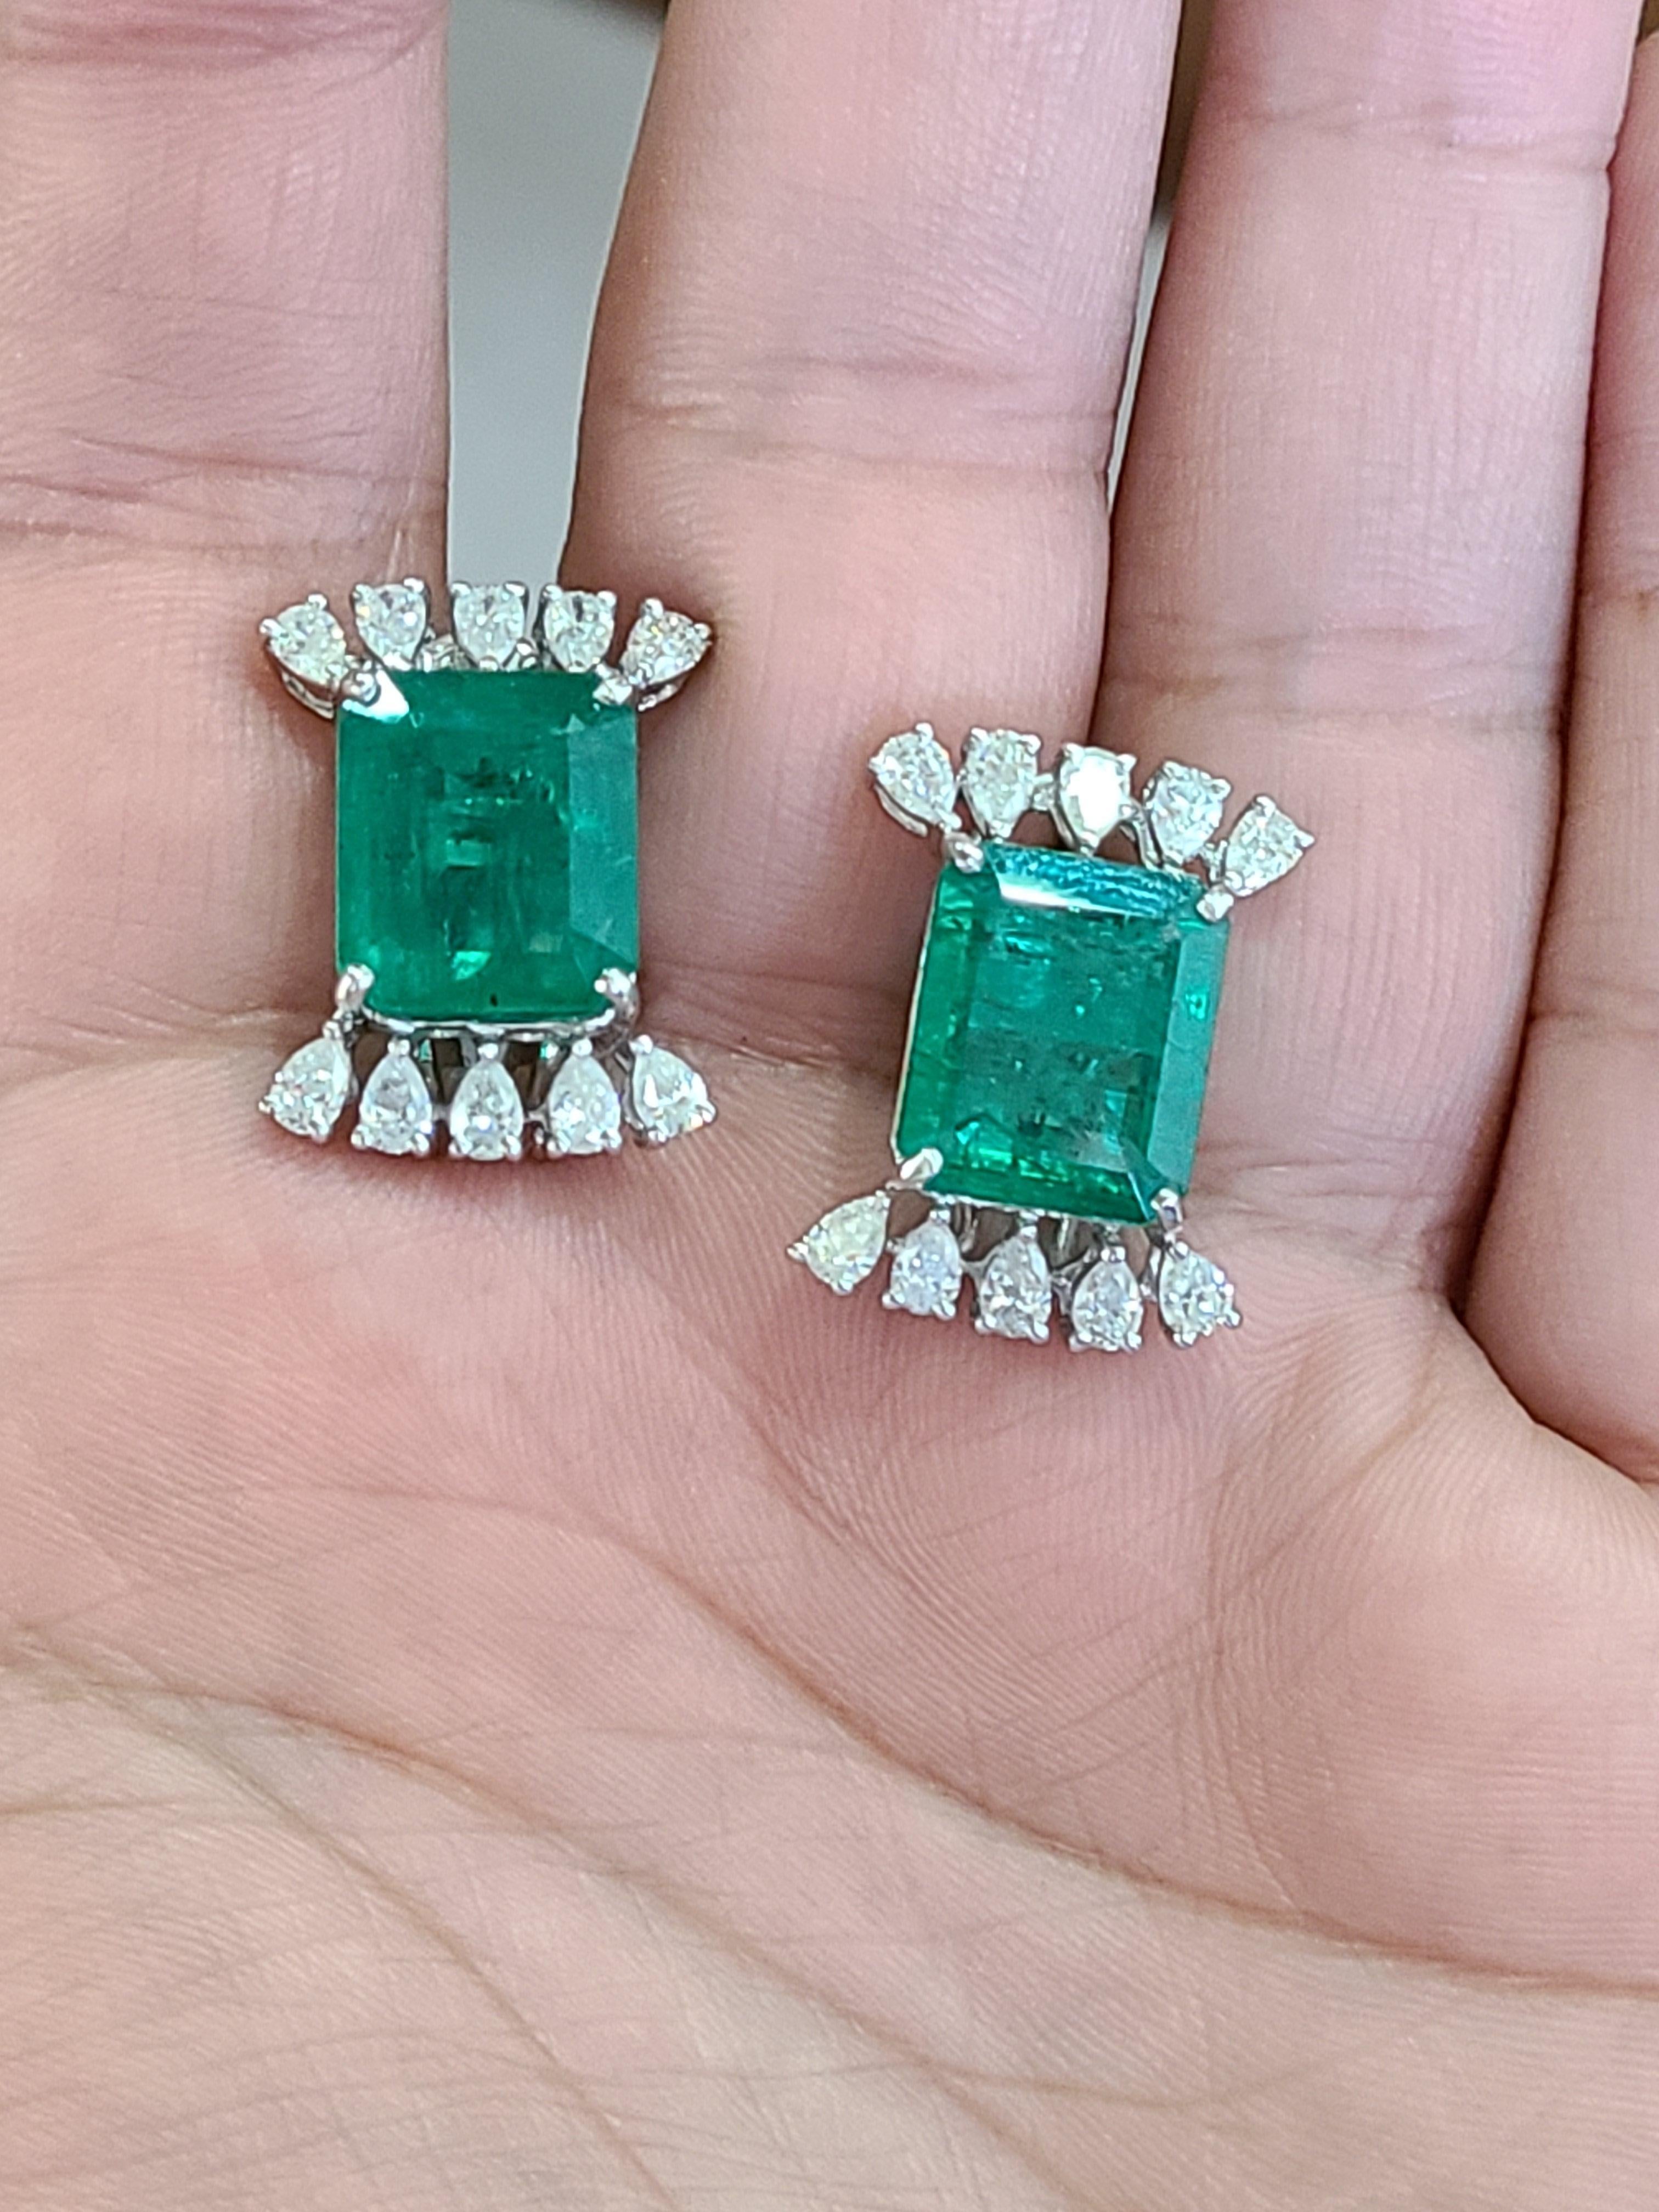 Emerald Cut Natural Emerald Studs in 18 Karat Gold with Pear Cut Diamonds